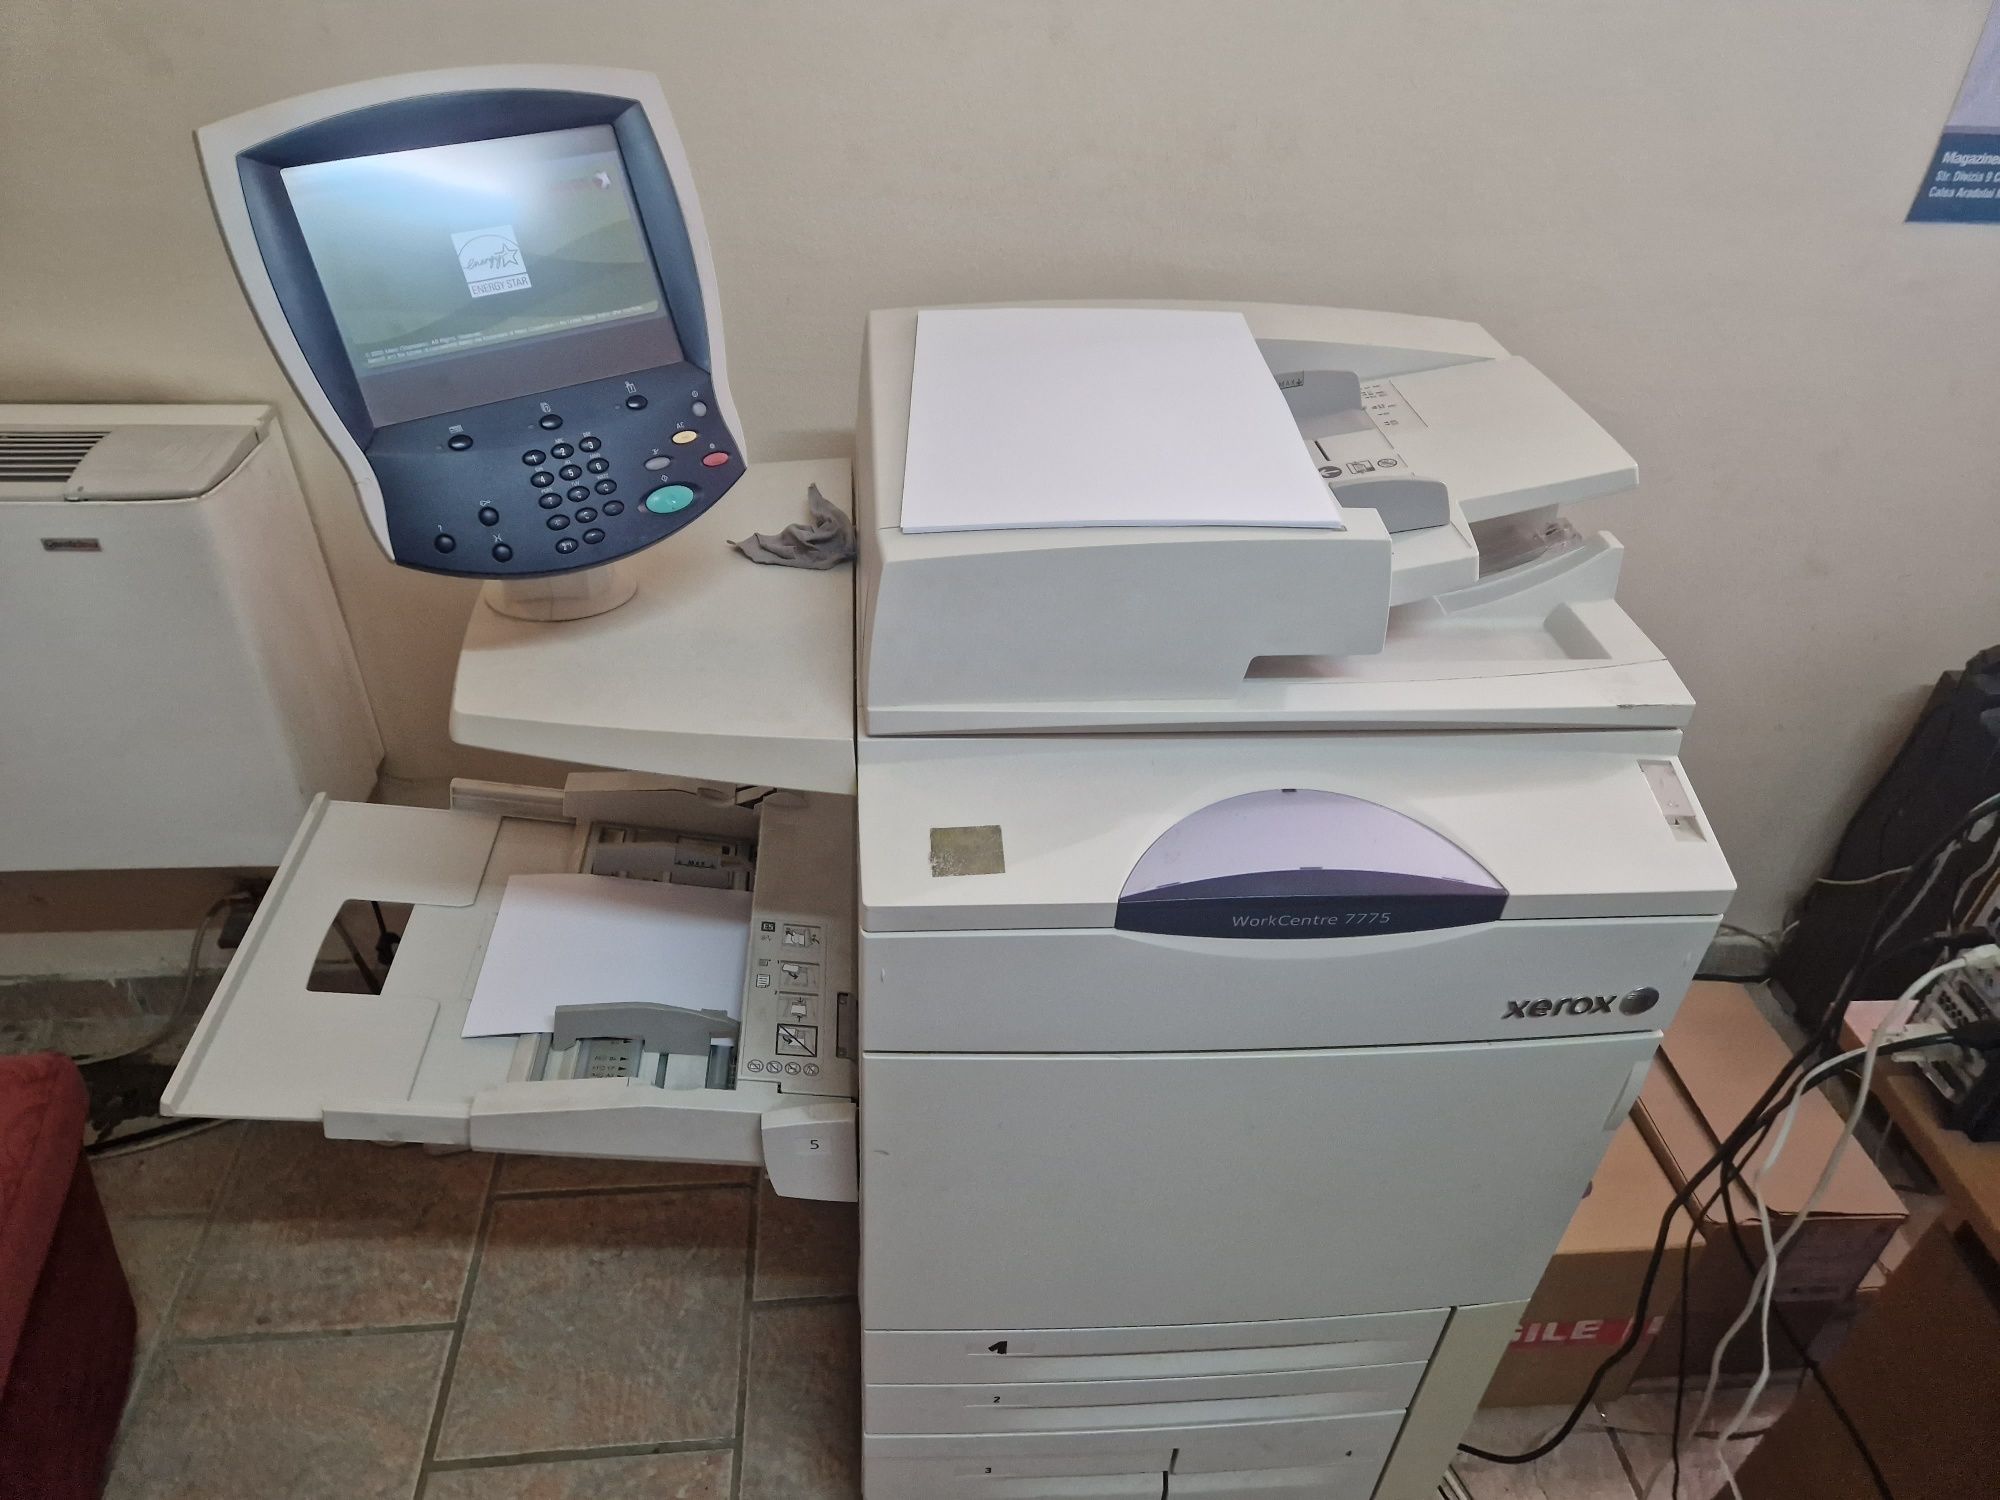 Imprimanta multifuncțională laser Xerox, 7755 wc, stare buna